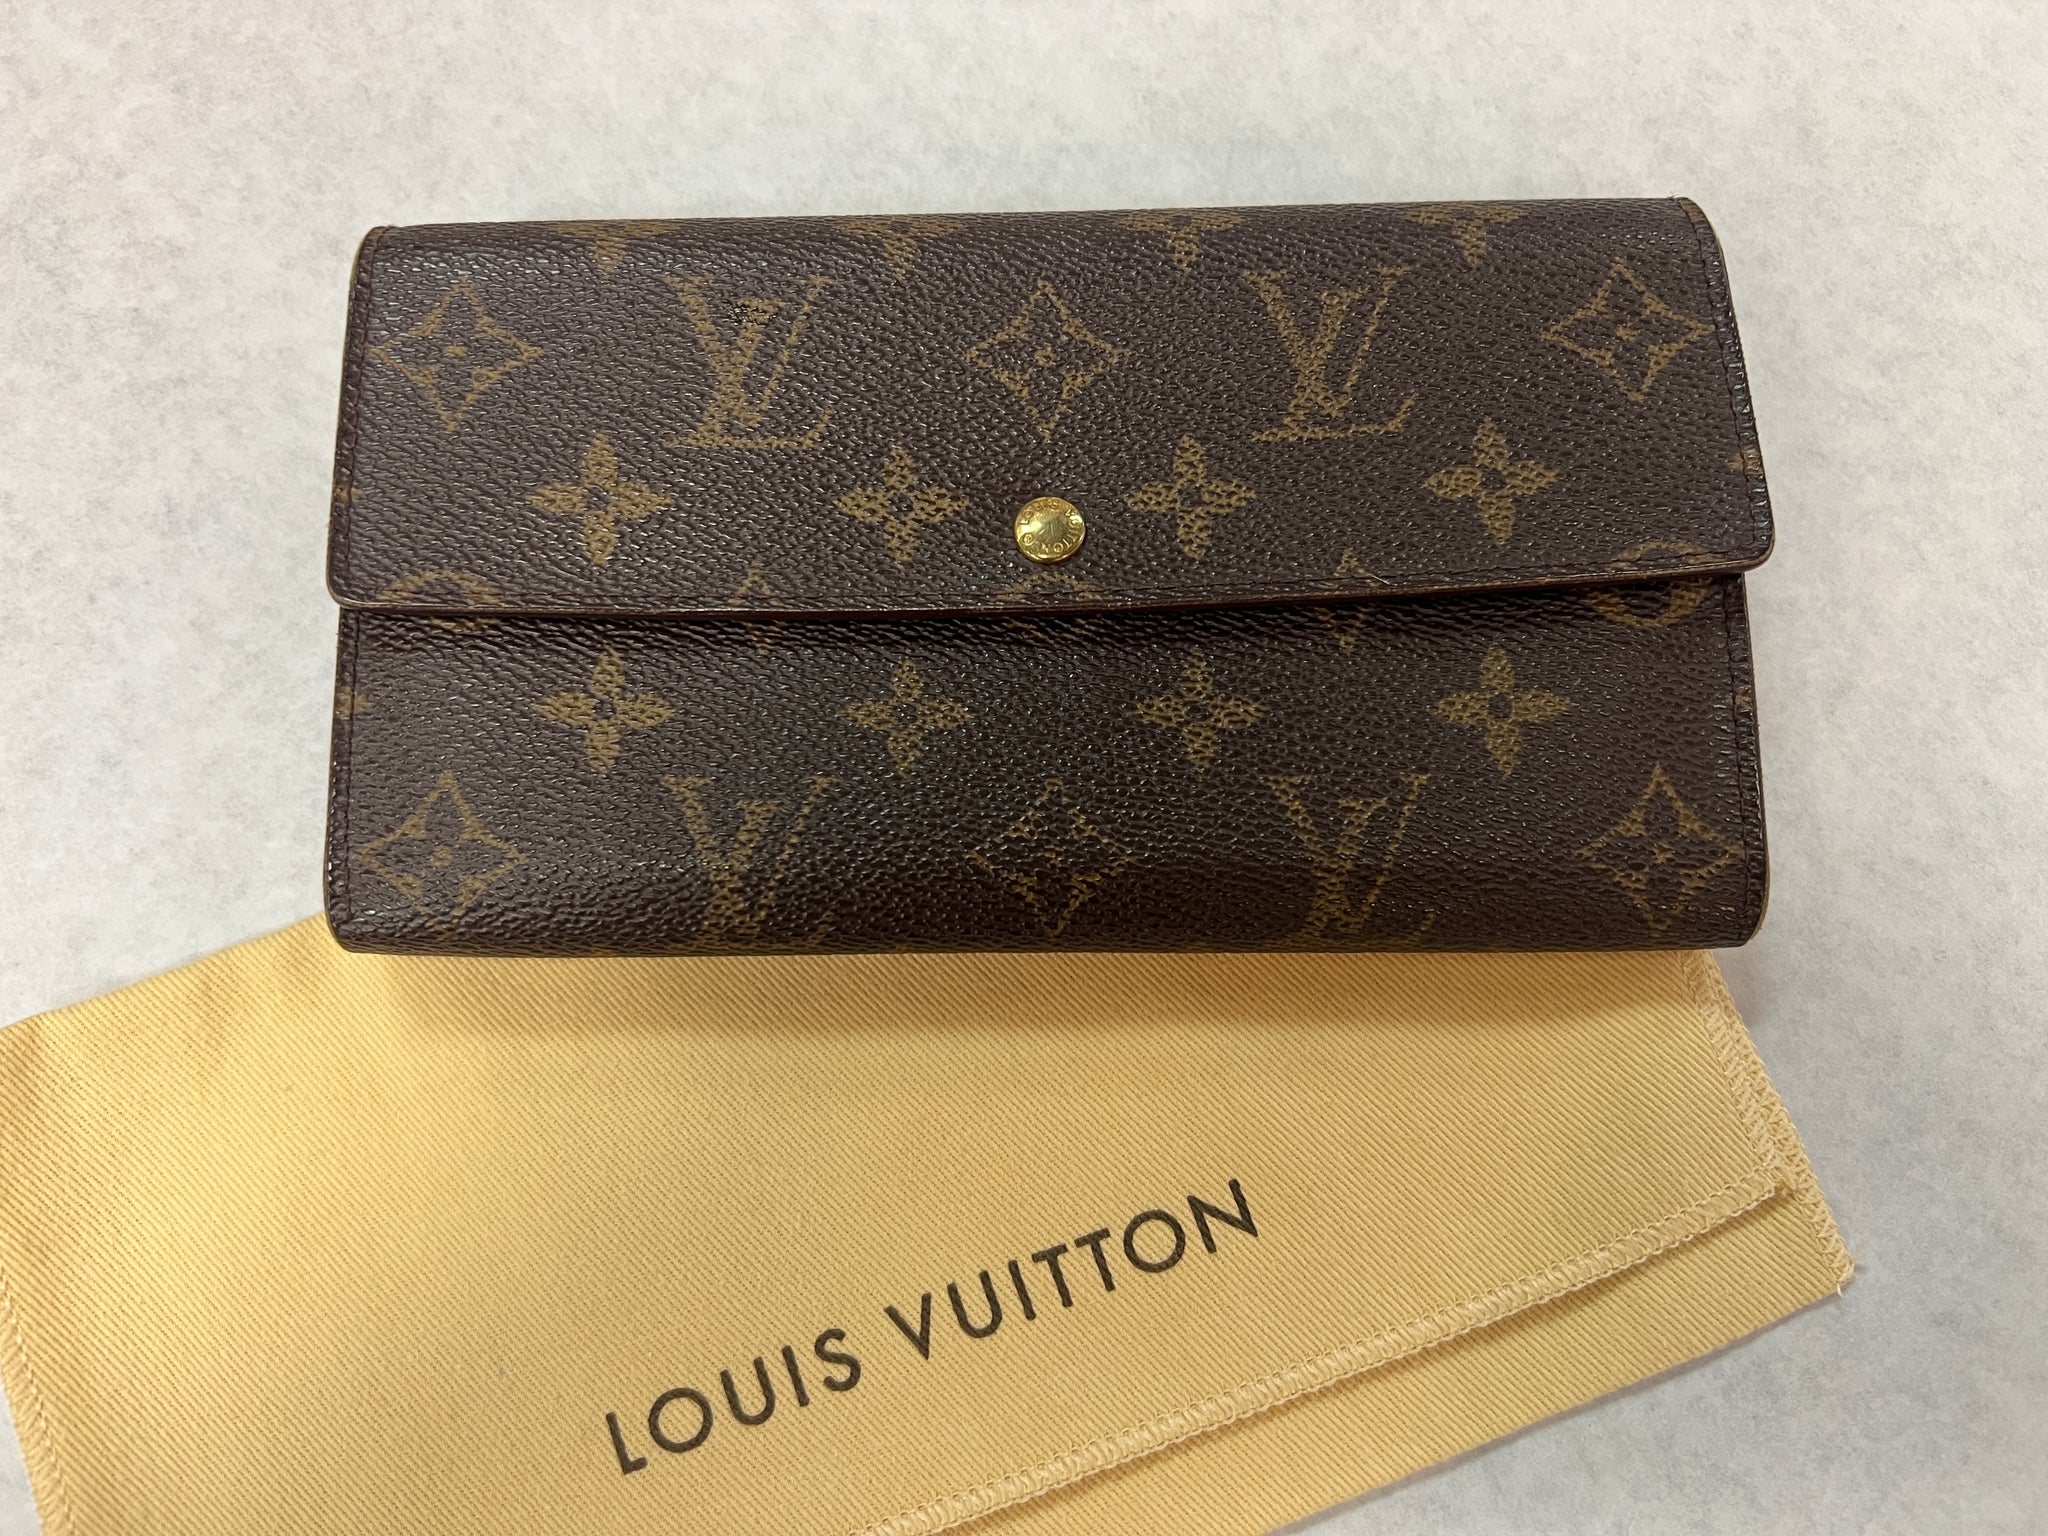 Authentic Louis Vuitton Mens wallet